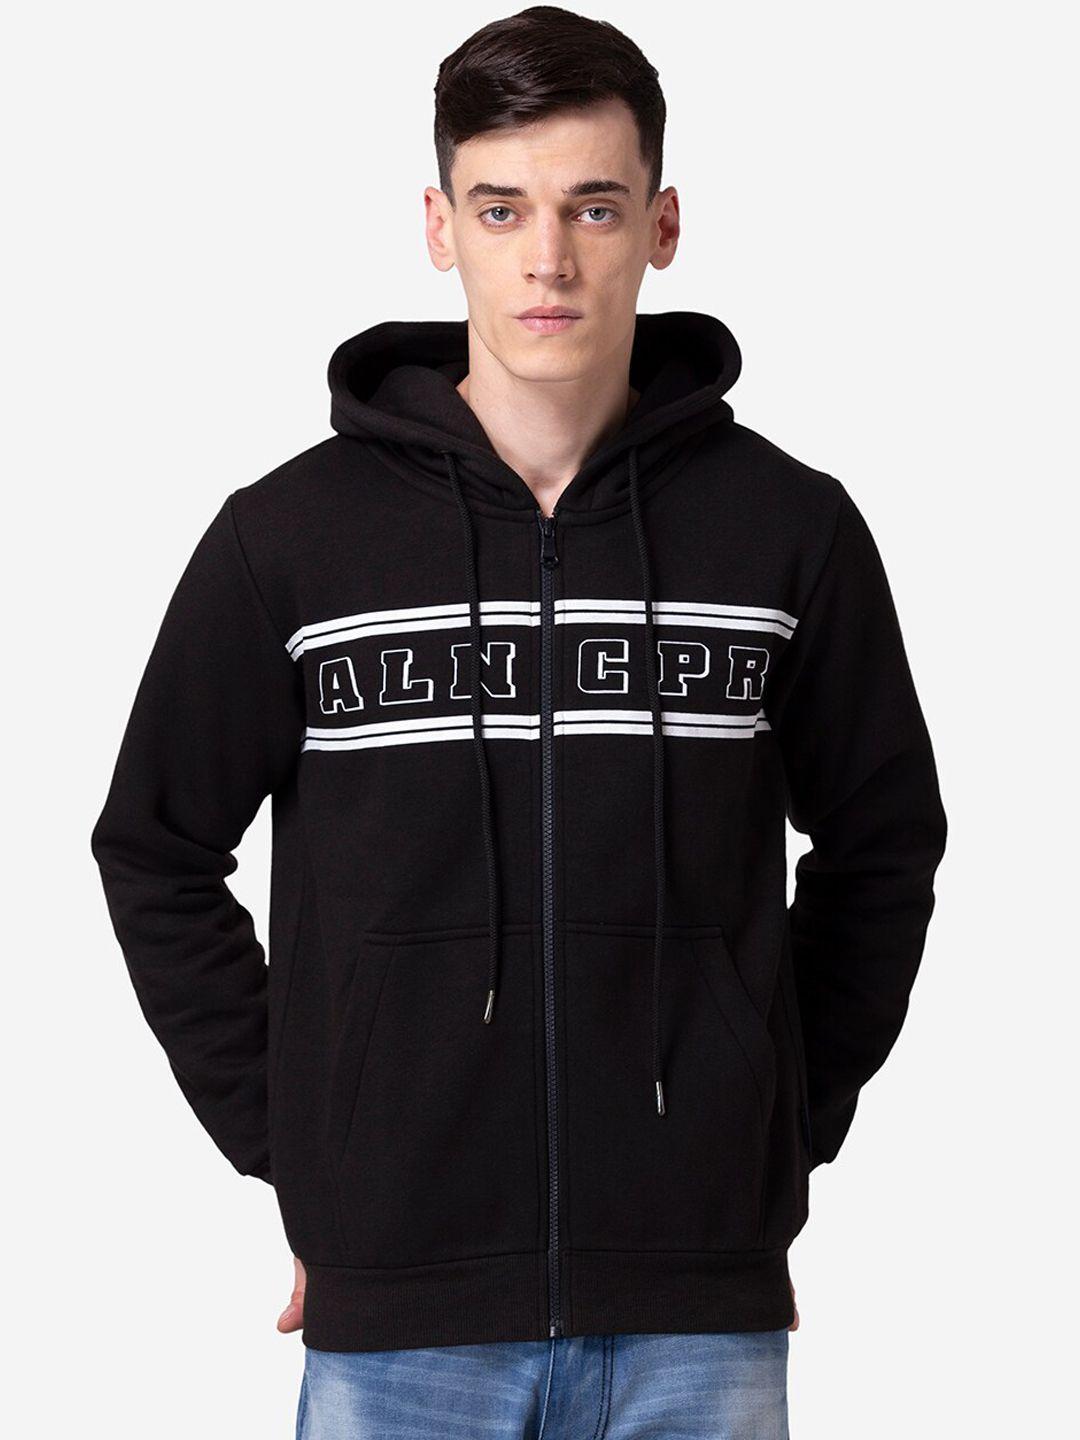 allen cooper men black printed hooded sweatshirt